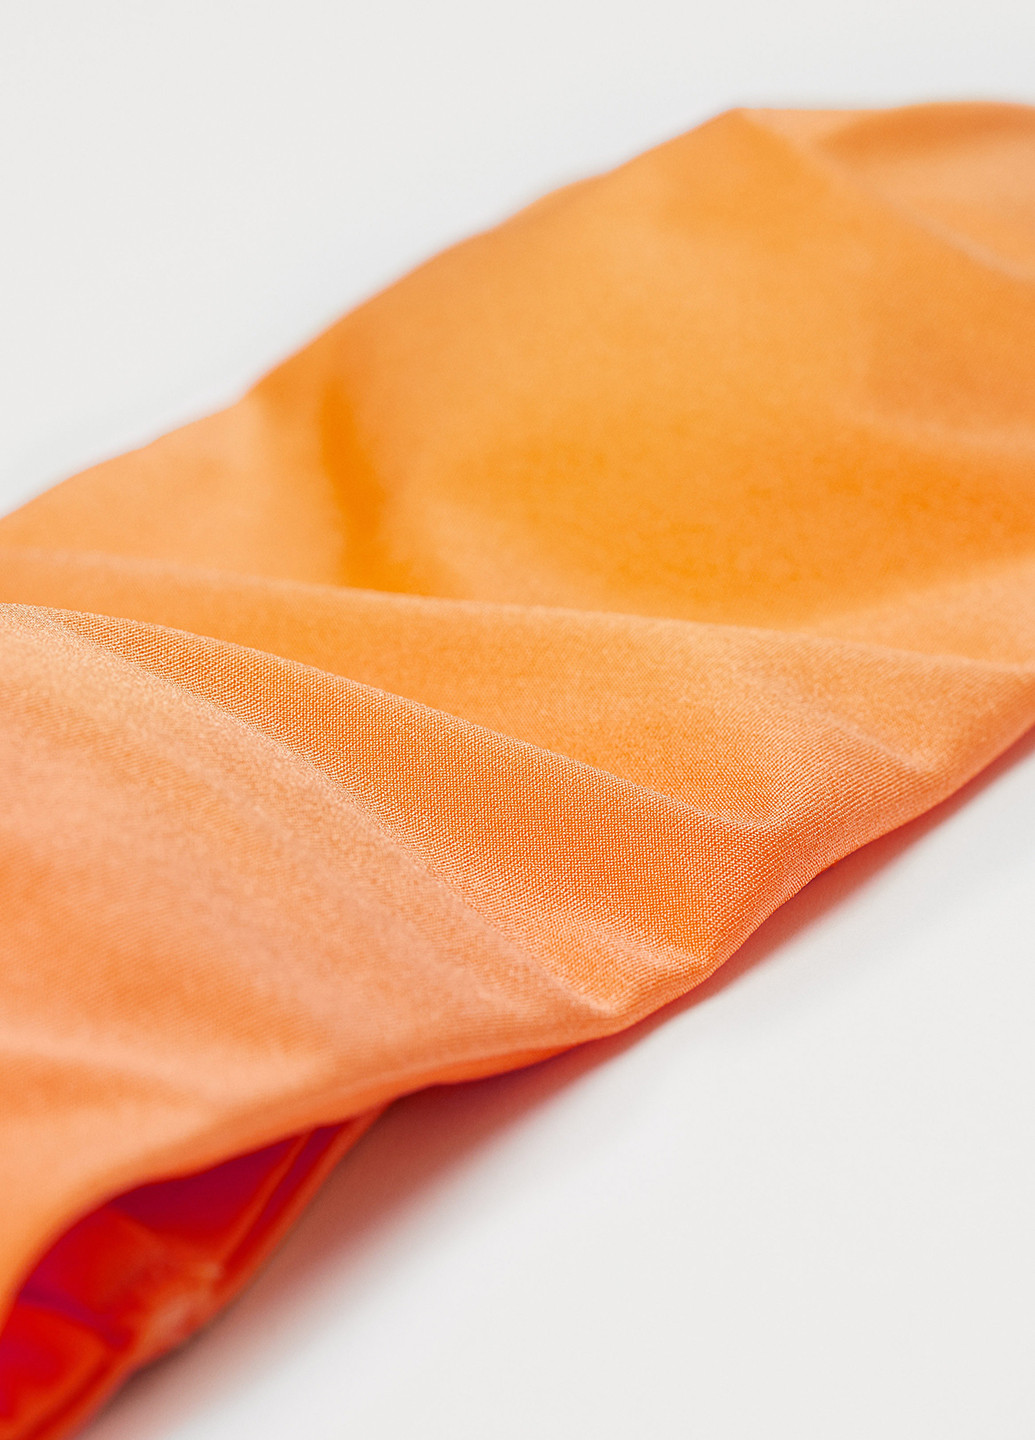 Купальний ліф H&M бандо однотонний помаранчевий пляжний поліамід